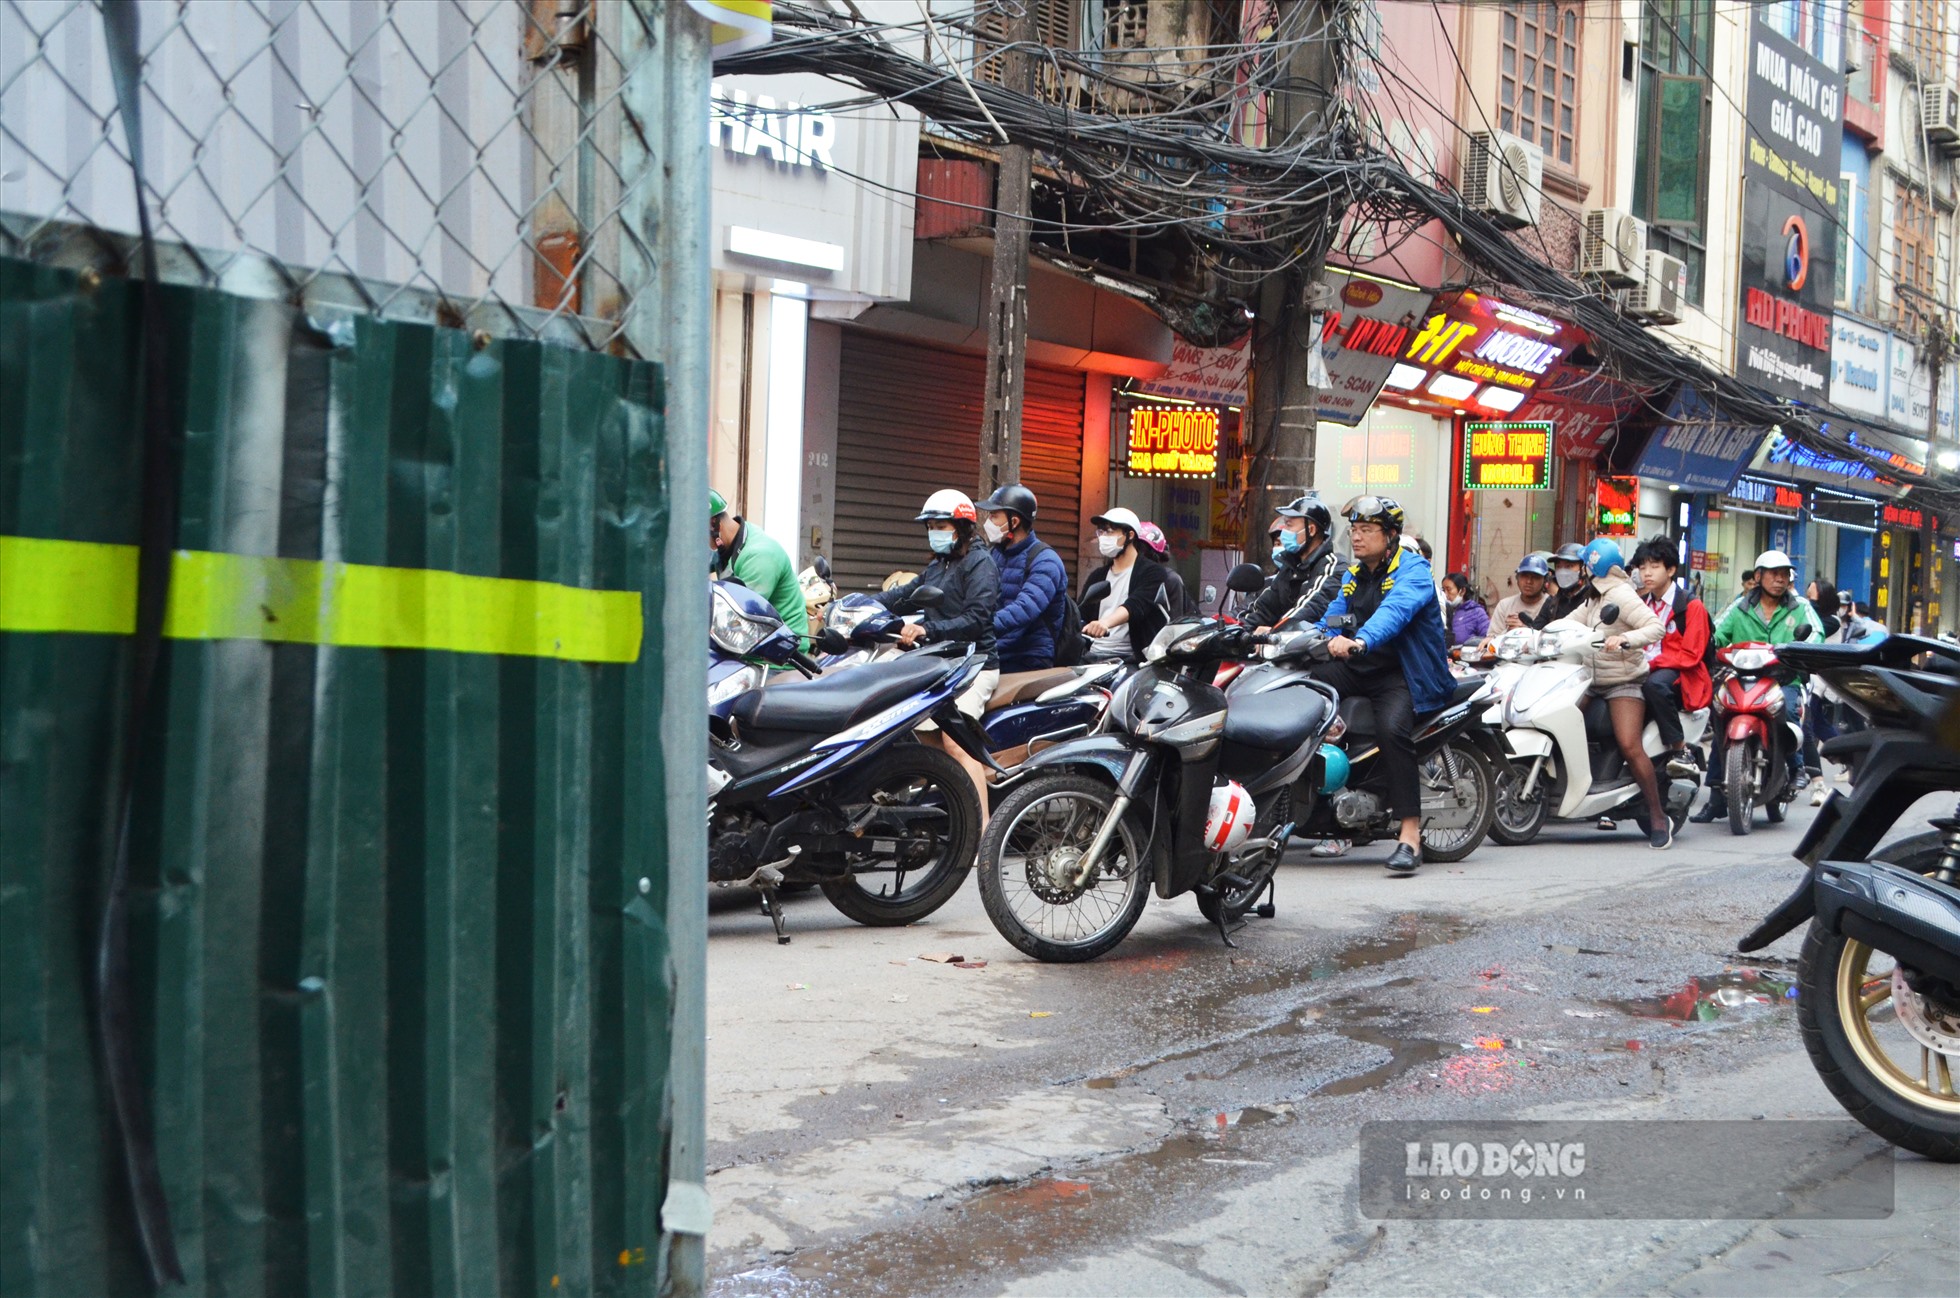 Ghi nhận của Lao Động vào giờ cao điểm, do lối đi chỉ đủ vừa cho 1 xe máy lưu thông, người dân phải dừng chờ rất lâu mới có thể di chuyển.